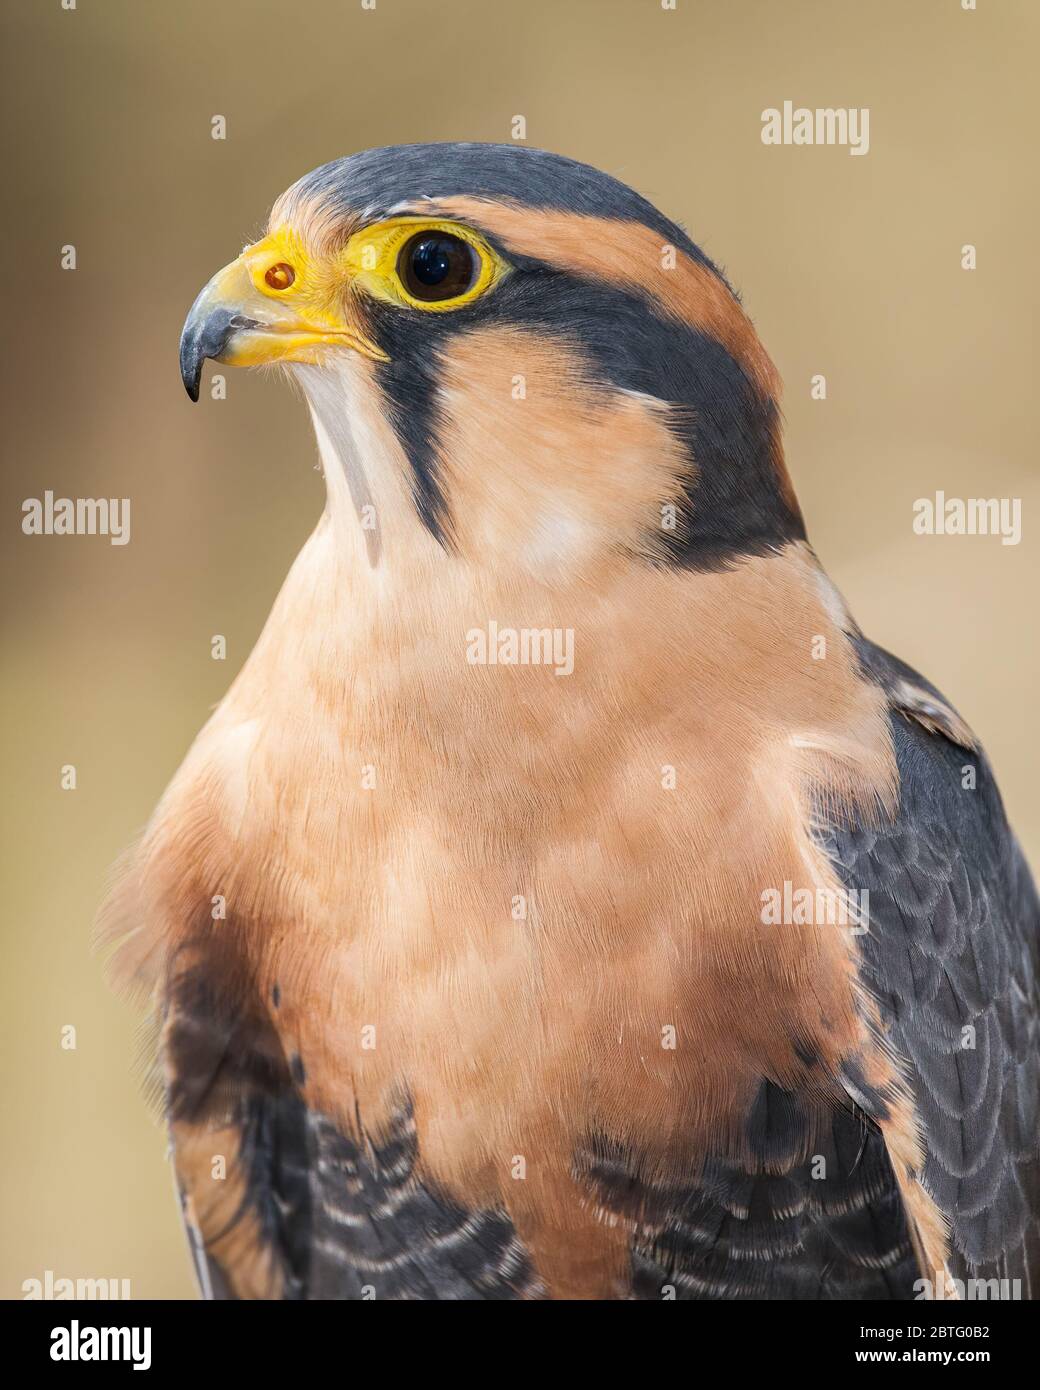 A portrait of an Aplomado falcon Stock Photo